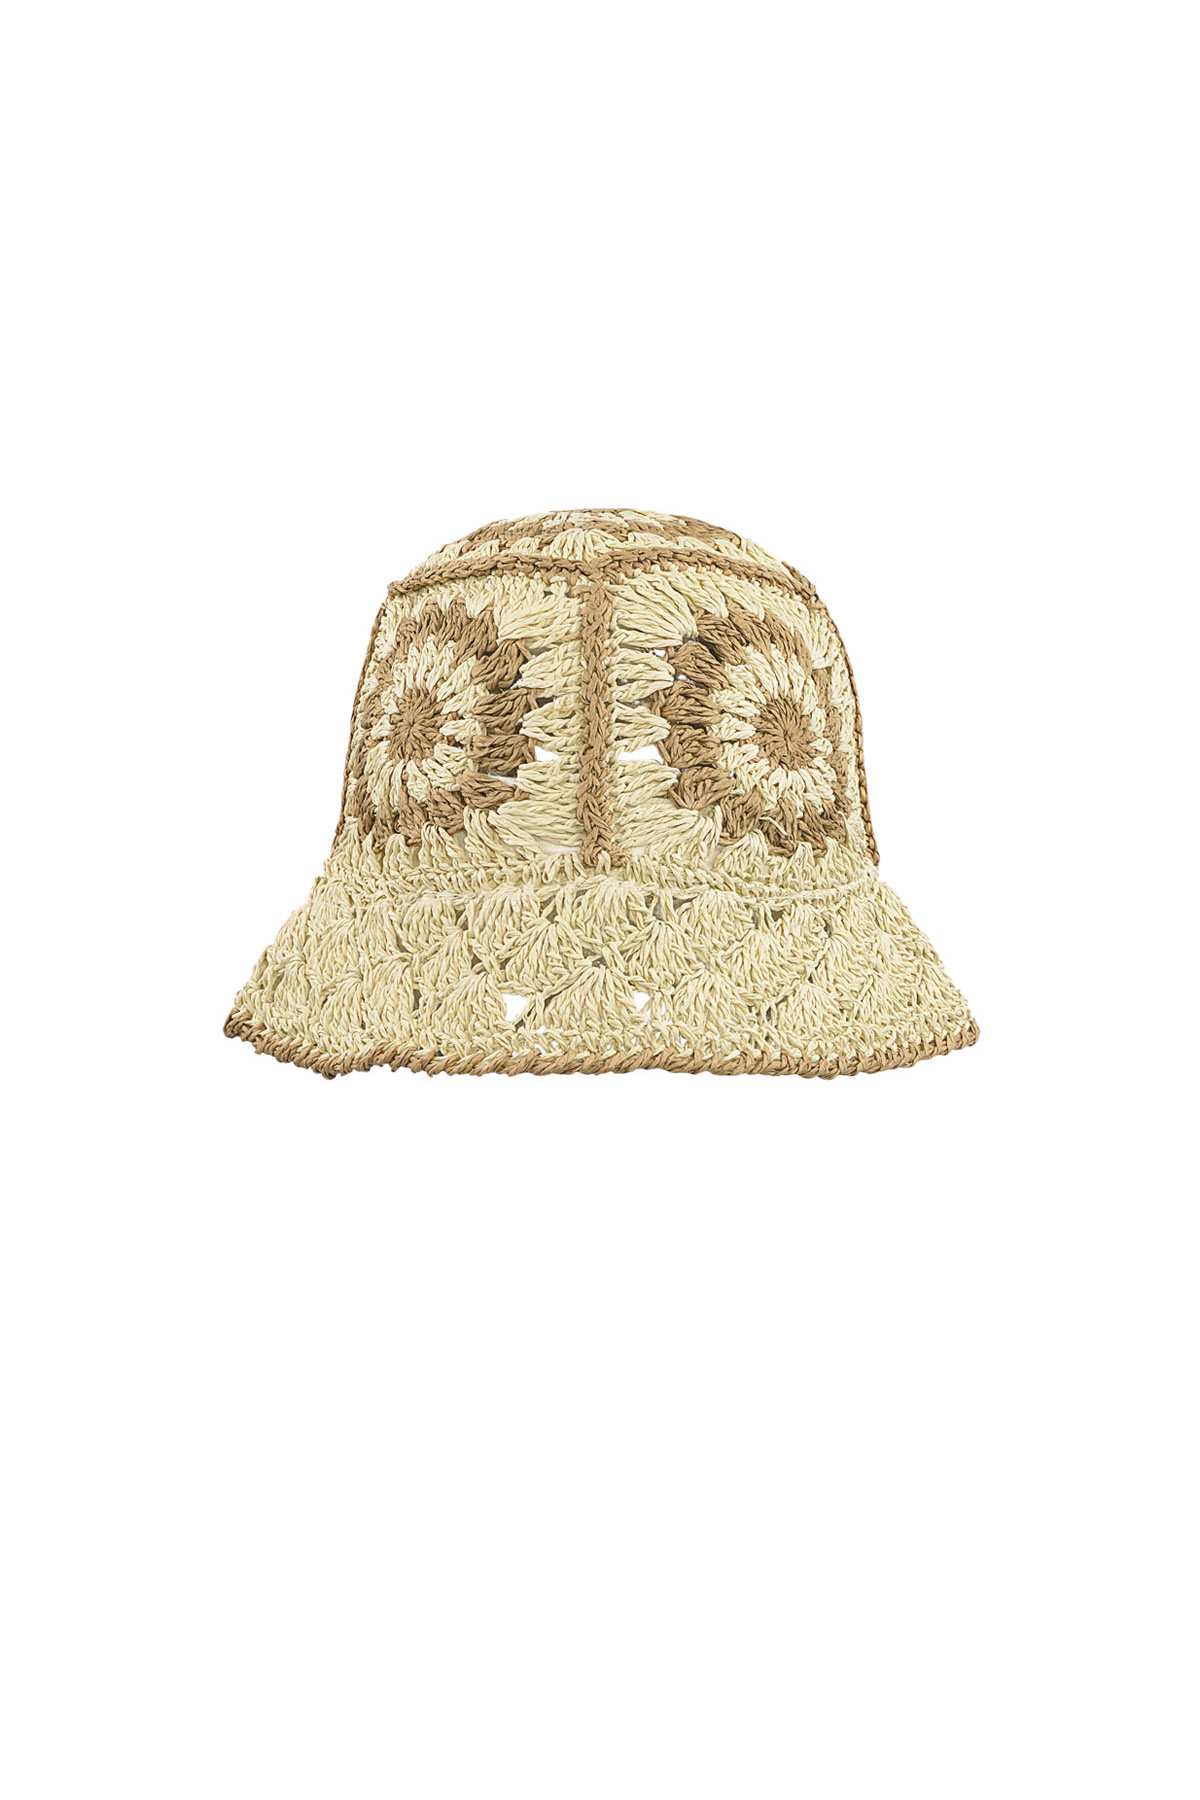 Crochet hat with flowers - beige